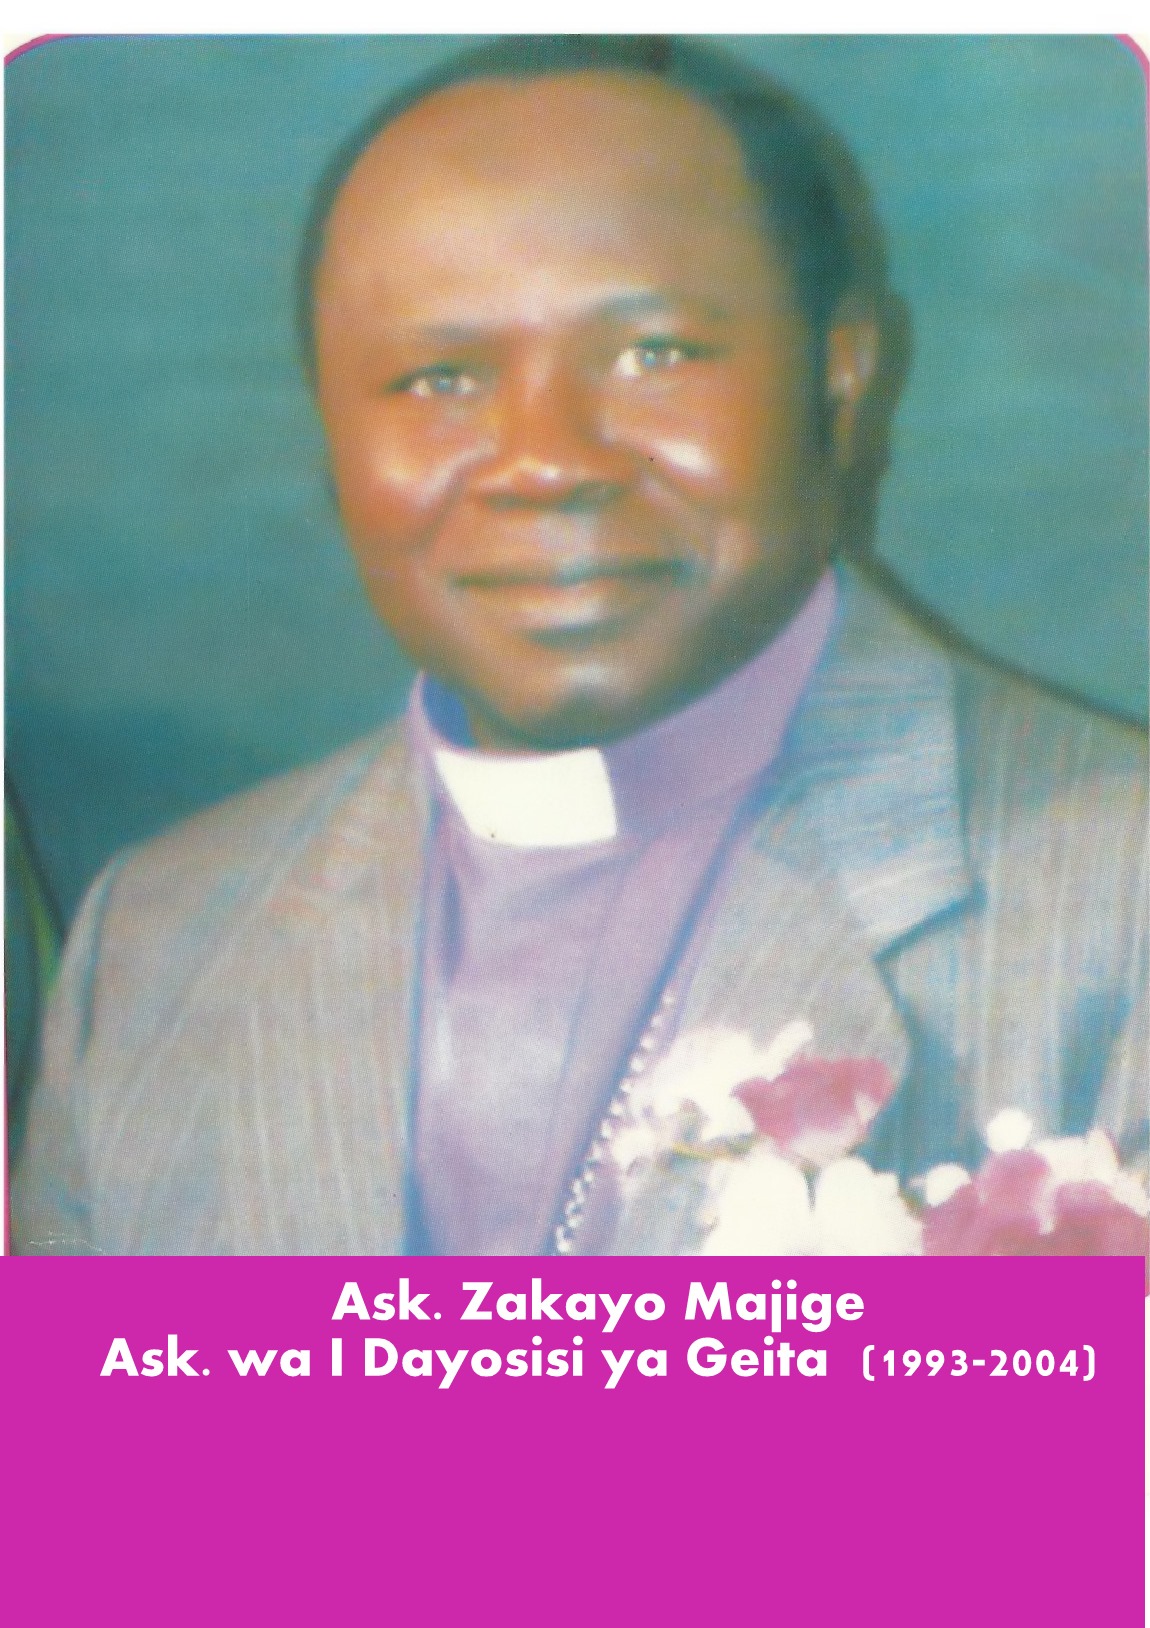 Bishop Zakayo Majige